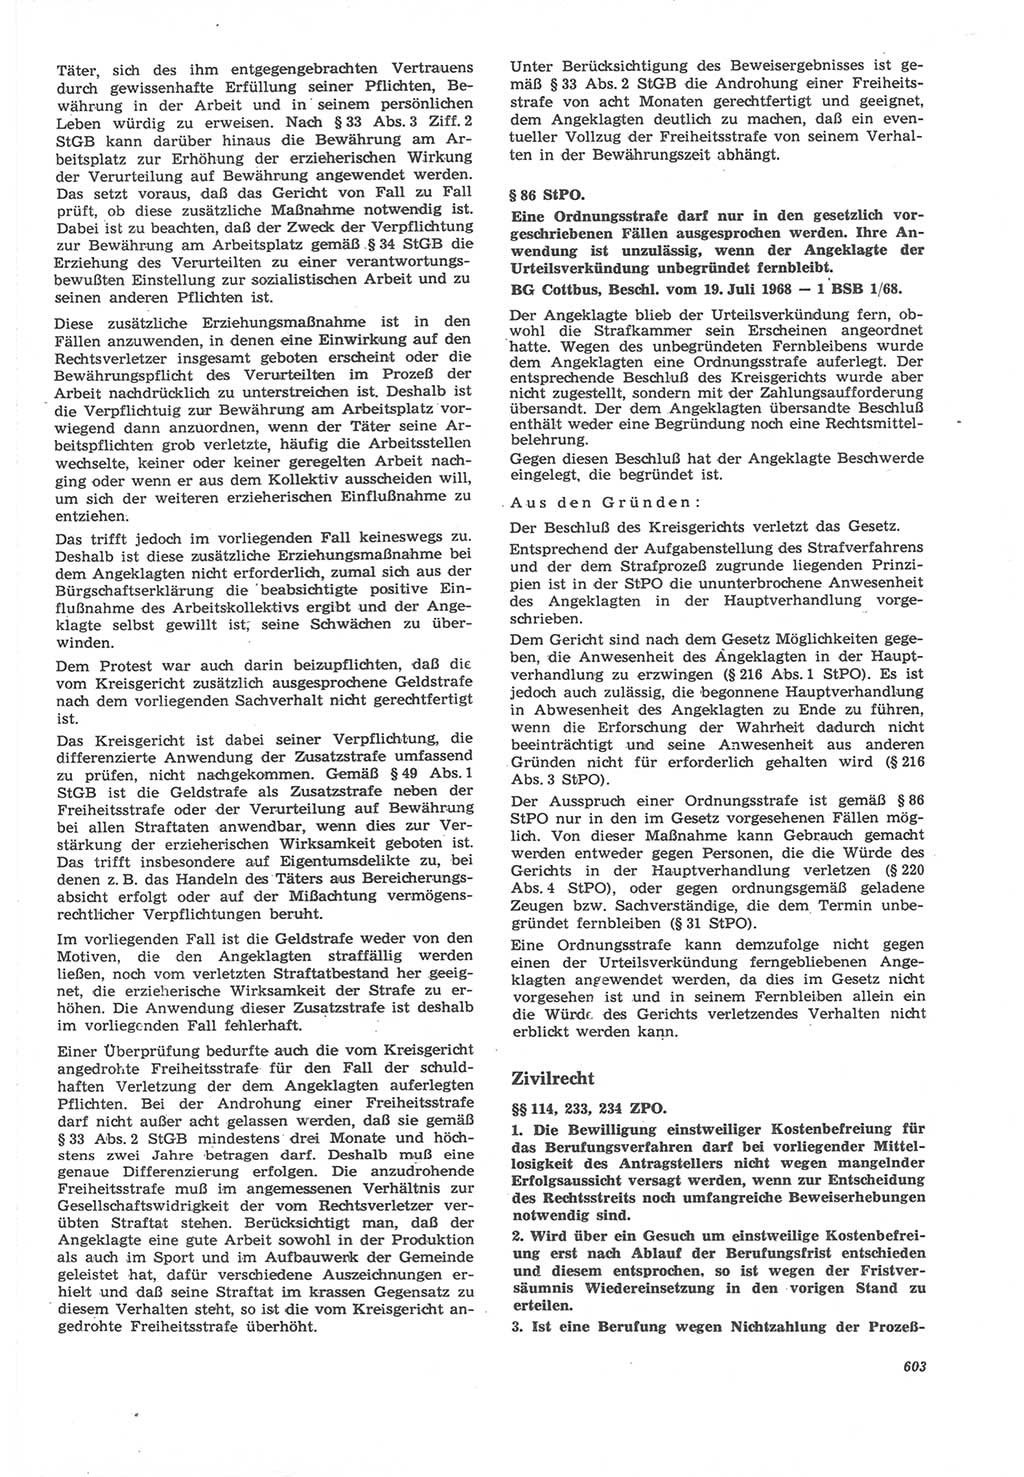 Neue Justiz (NJ), Zeitschrift für Recht und Rechtswissenschaft [Deutsche Demokratische Republik (DDR)], 22. Jahrgang 1968, Seite 603 (NJ DDR 1968, S. 603)